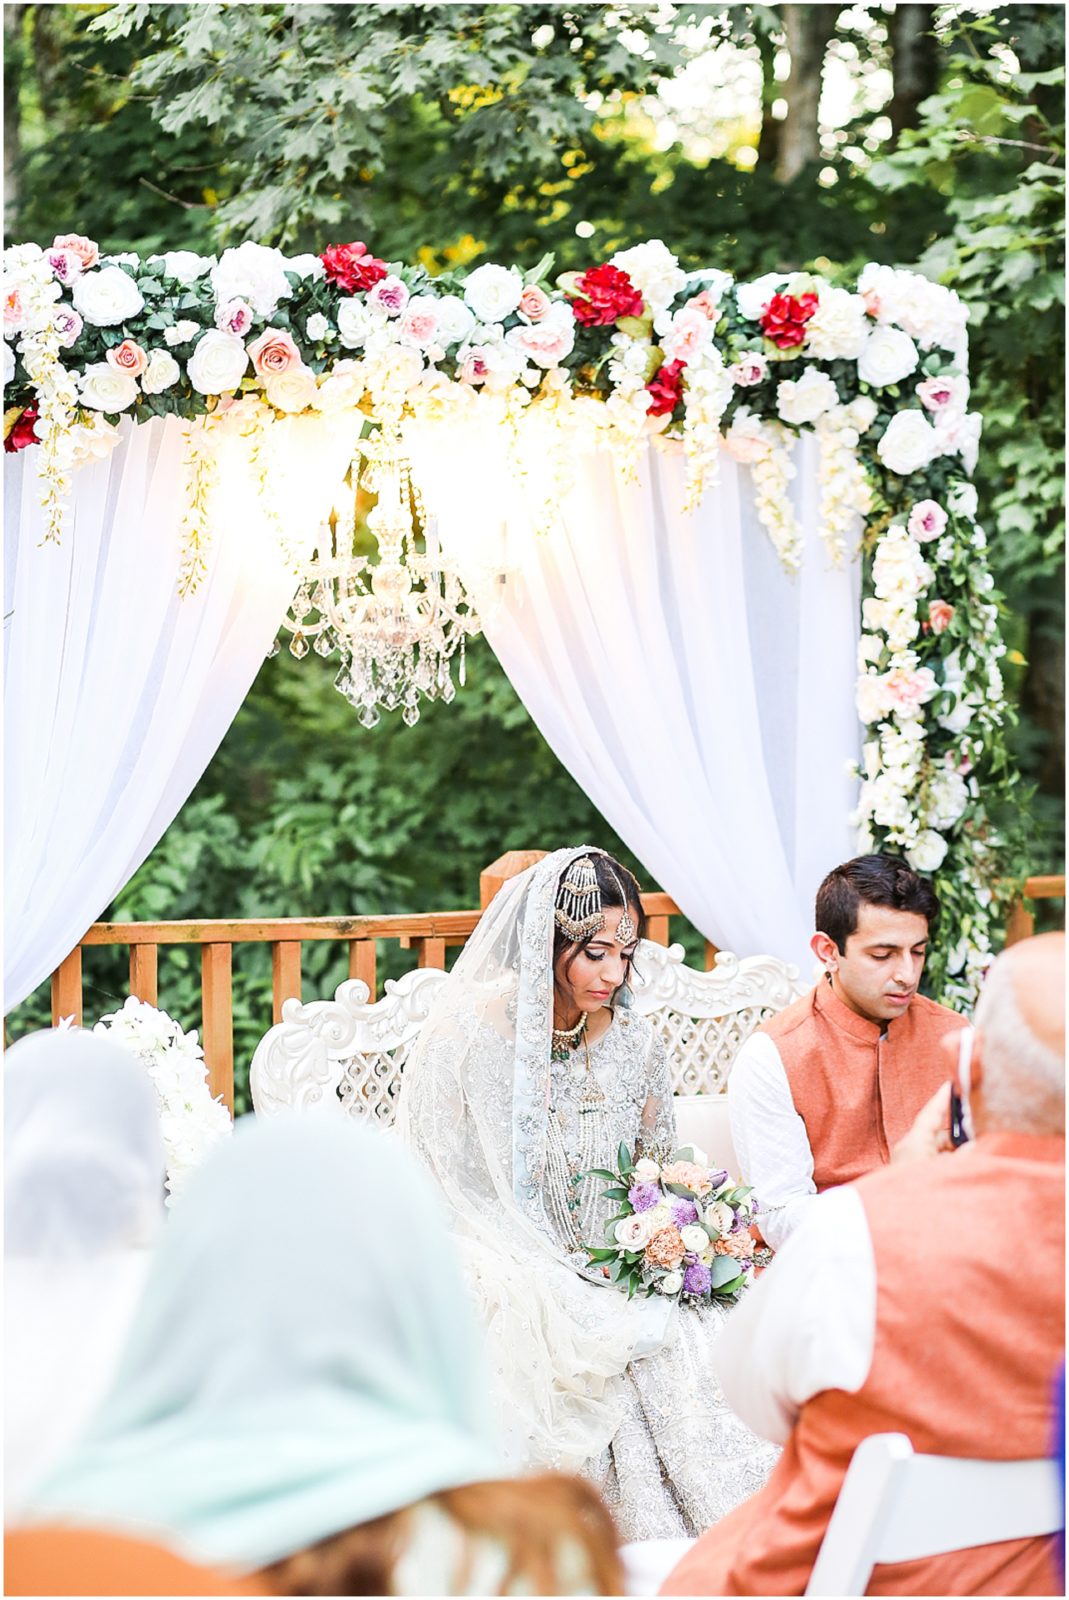 Indian Pakistani Punjabi Wedding Ceremony Nikkah - St. Louis Missouri - STL - Kansas City based Wedding Photographer - Four Seasons Wedding - Hennah Party - Islamic Wedding Ceremony - Mariam and Amaad's Intimate Backyard Wedding 